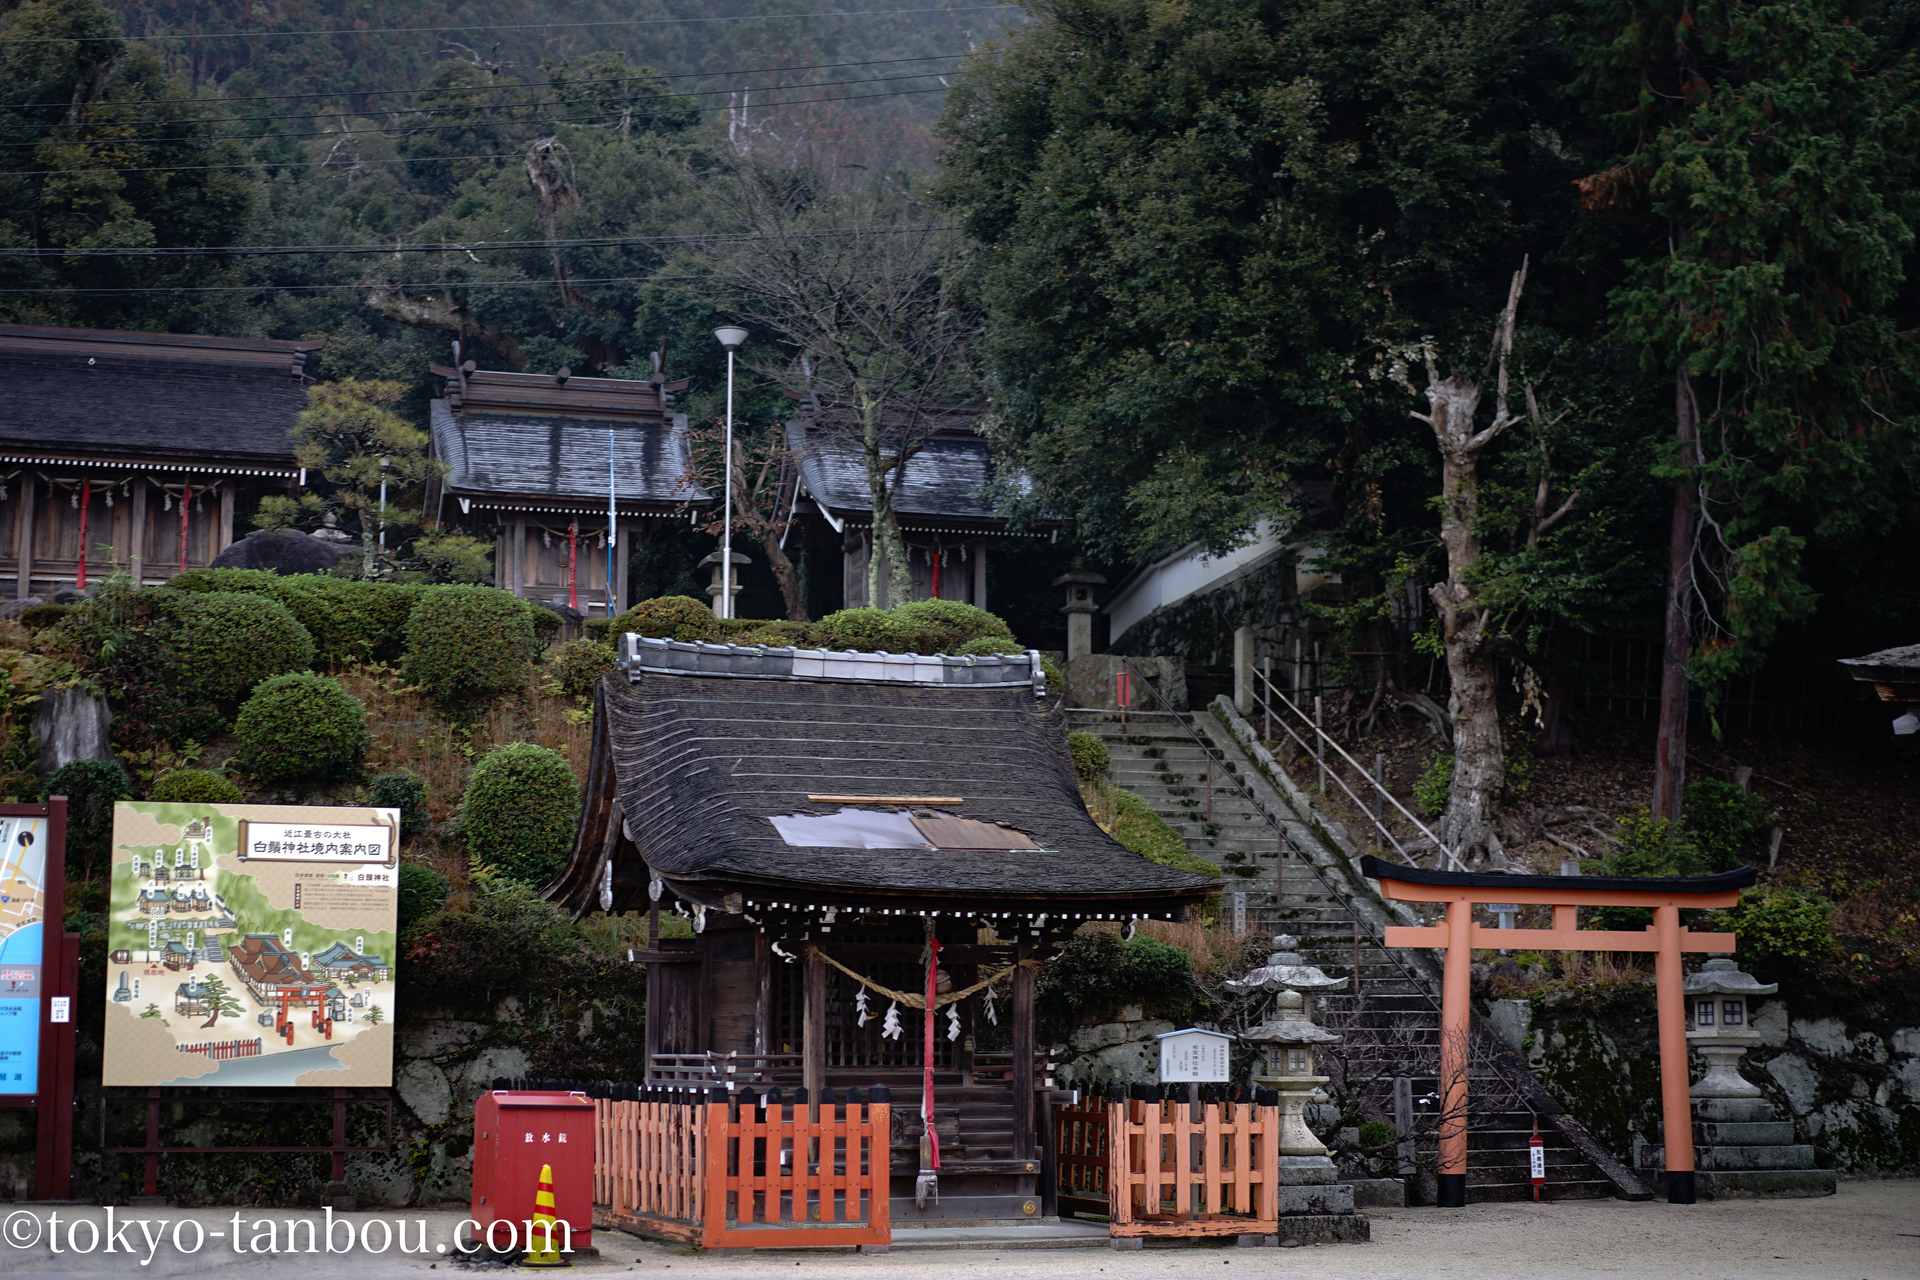 滋賀県 琵琶湖の観光地 白髭神社の鳥居を タムロンa036 28 75 で撮影する ソニーのカメラで東京探訪記